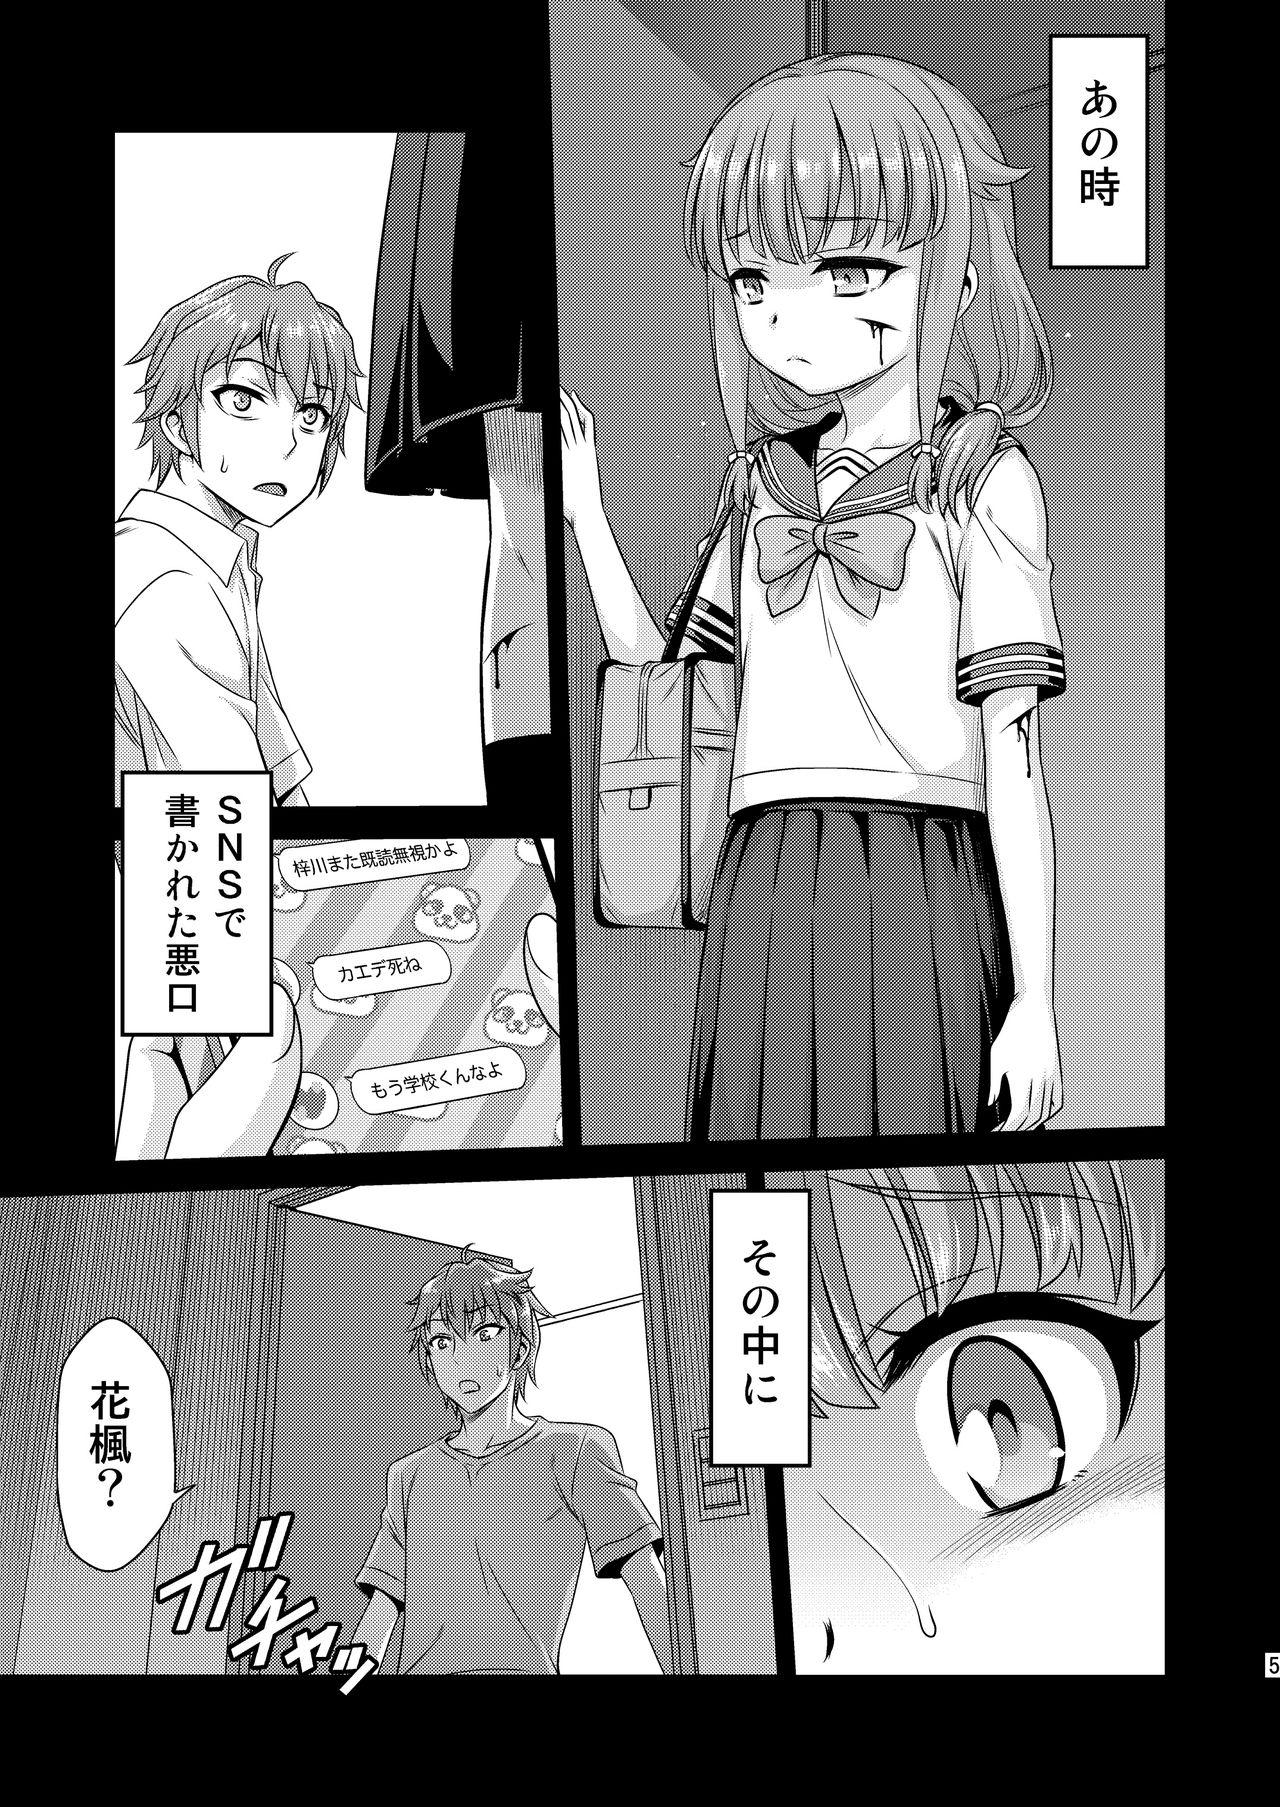 Licking Kaede Shoukougun!! - Seishun buta yarou wa bunny girl senpai no yume o minai 3some - Page 5